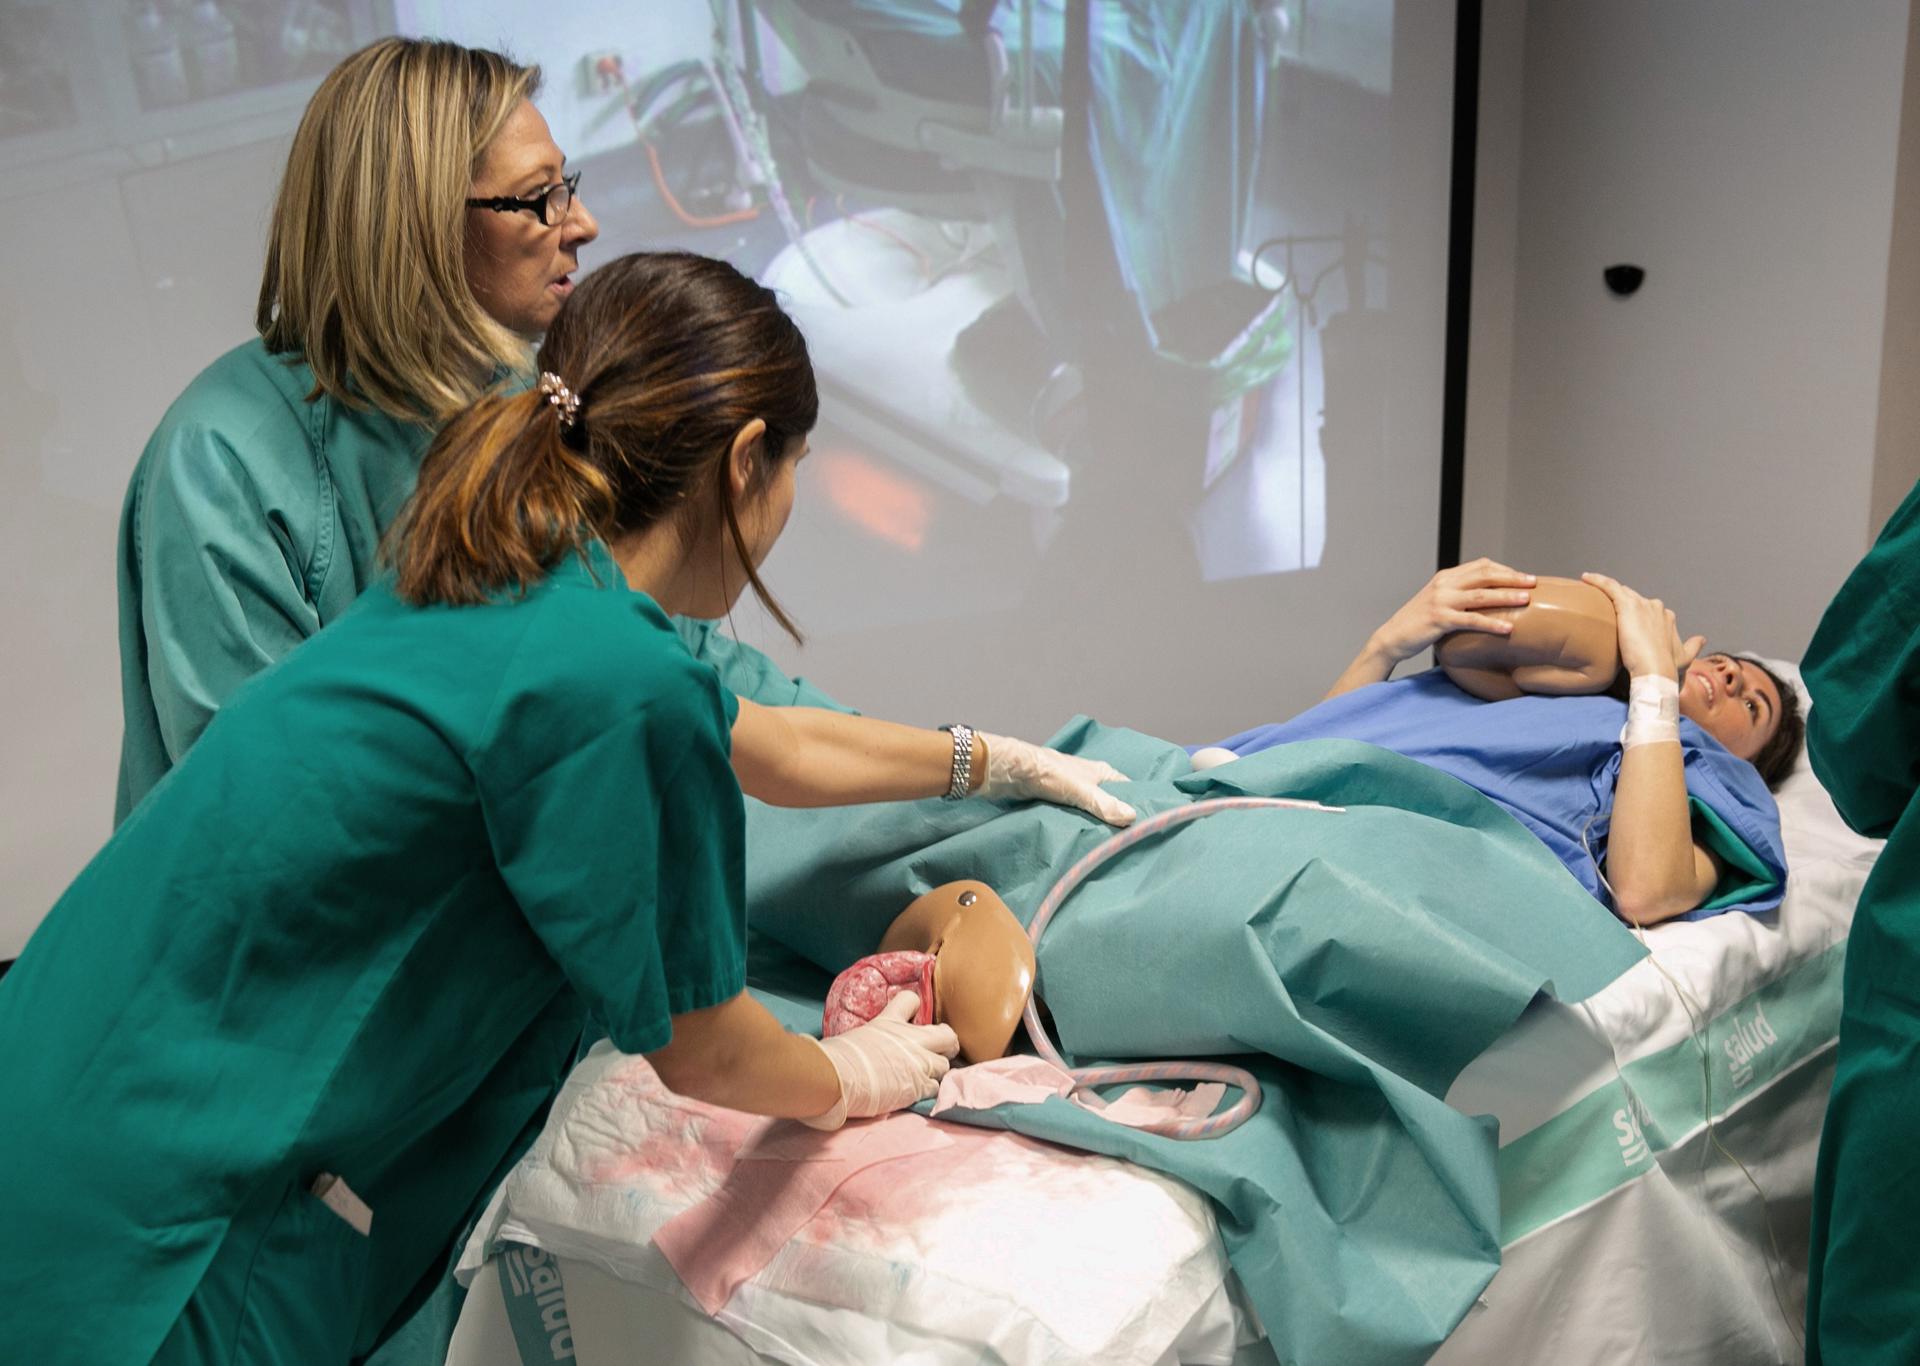 Unas matronas practican el suturado de un desgarro posparto sobre un modelo de gomaespuma, en una imagen de archivo. Hablamos sobre la violencia obstétrica